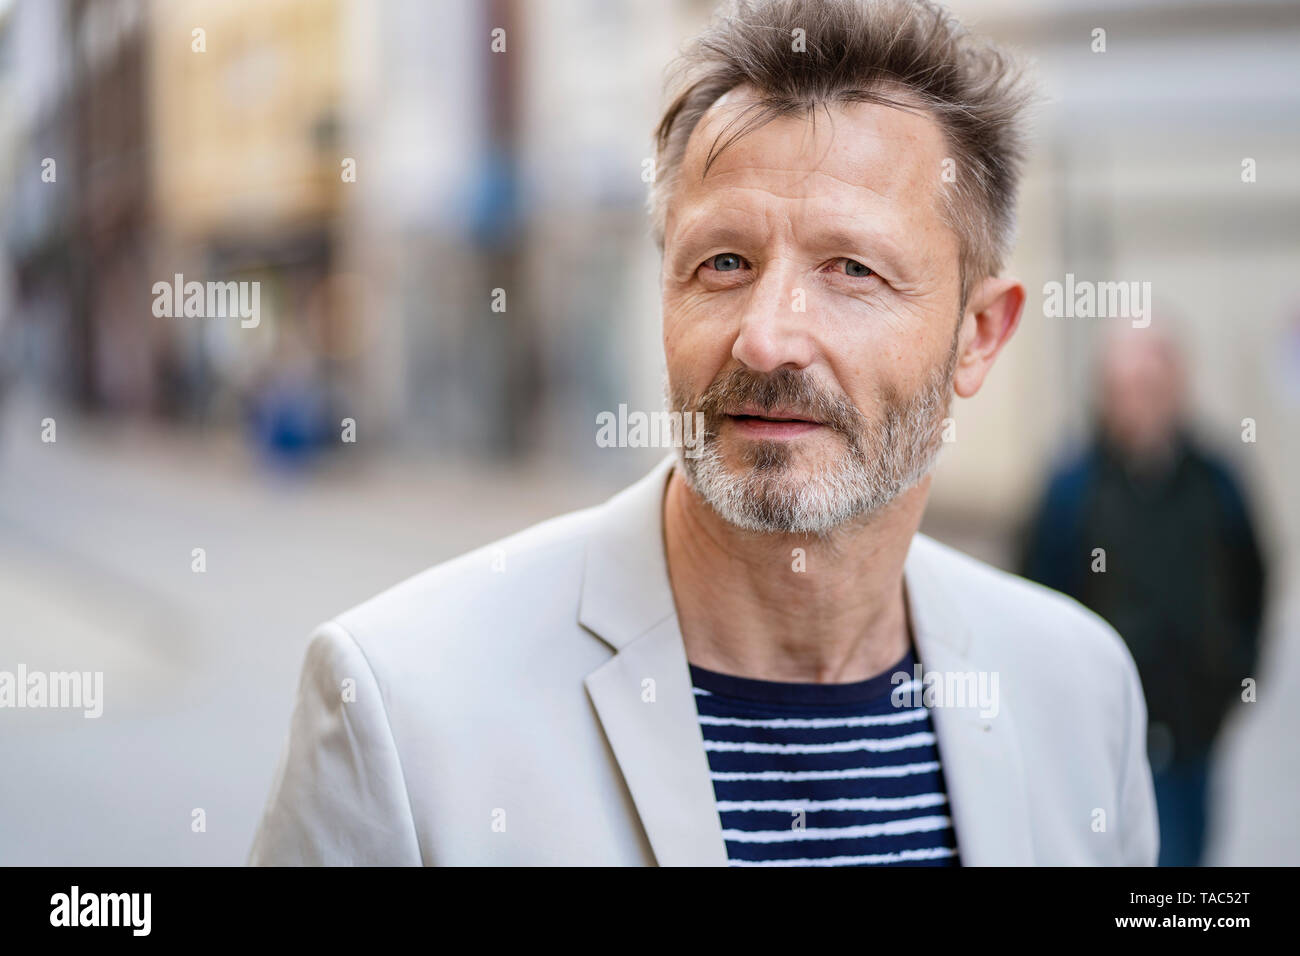 Portrait d'homme mûr avec barbe grisonnante Banque D'Images